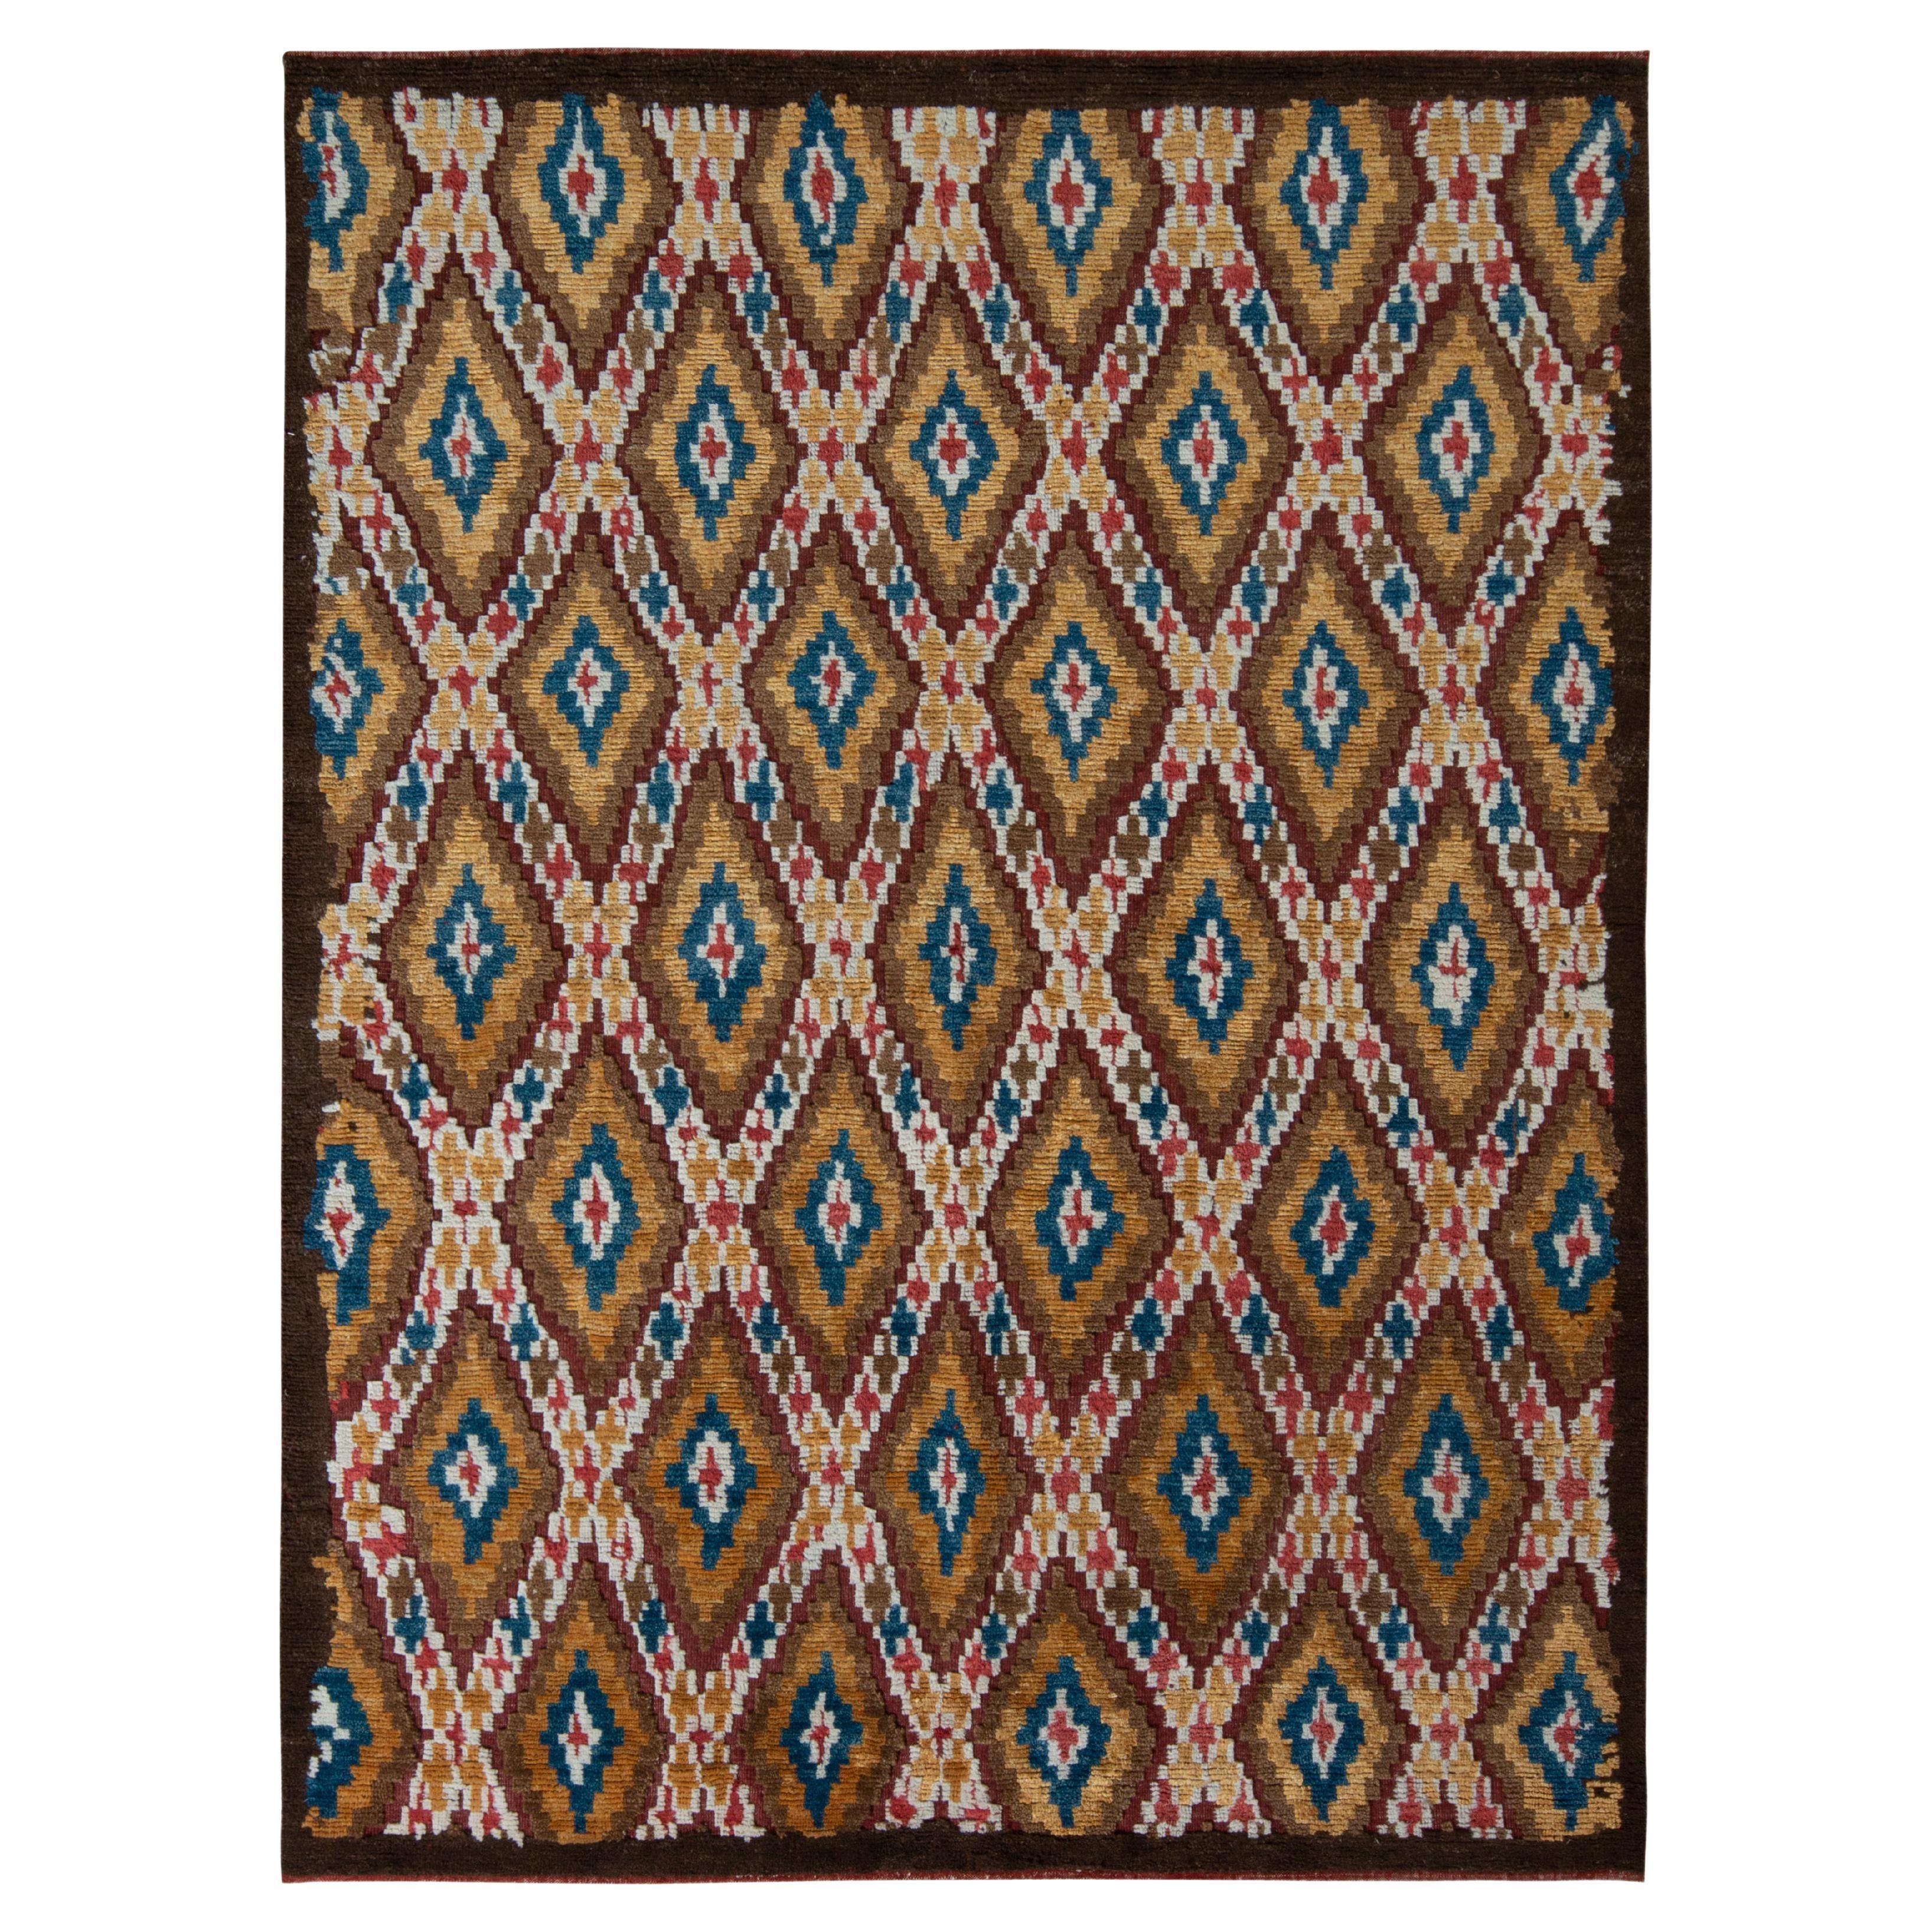 Rug & Kilim's Marokkanischer Teppich in Beige-Braun mit Rautenmuster